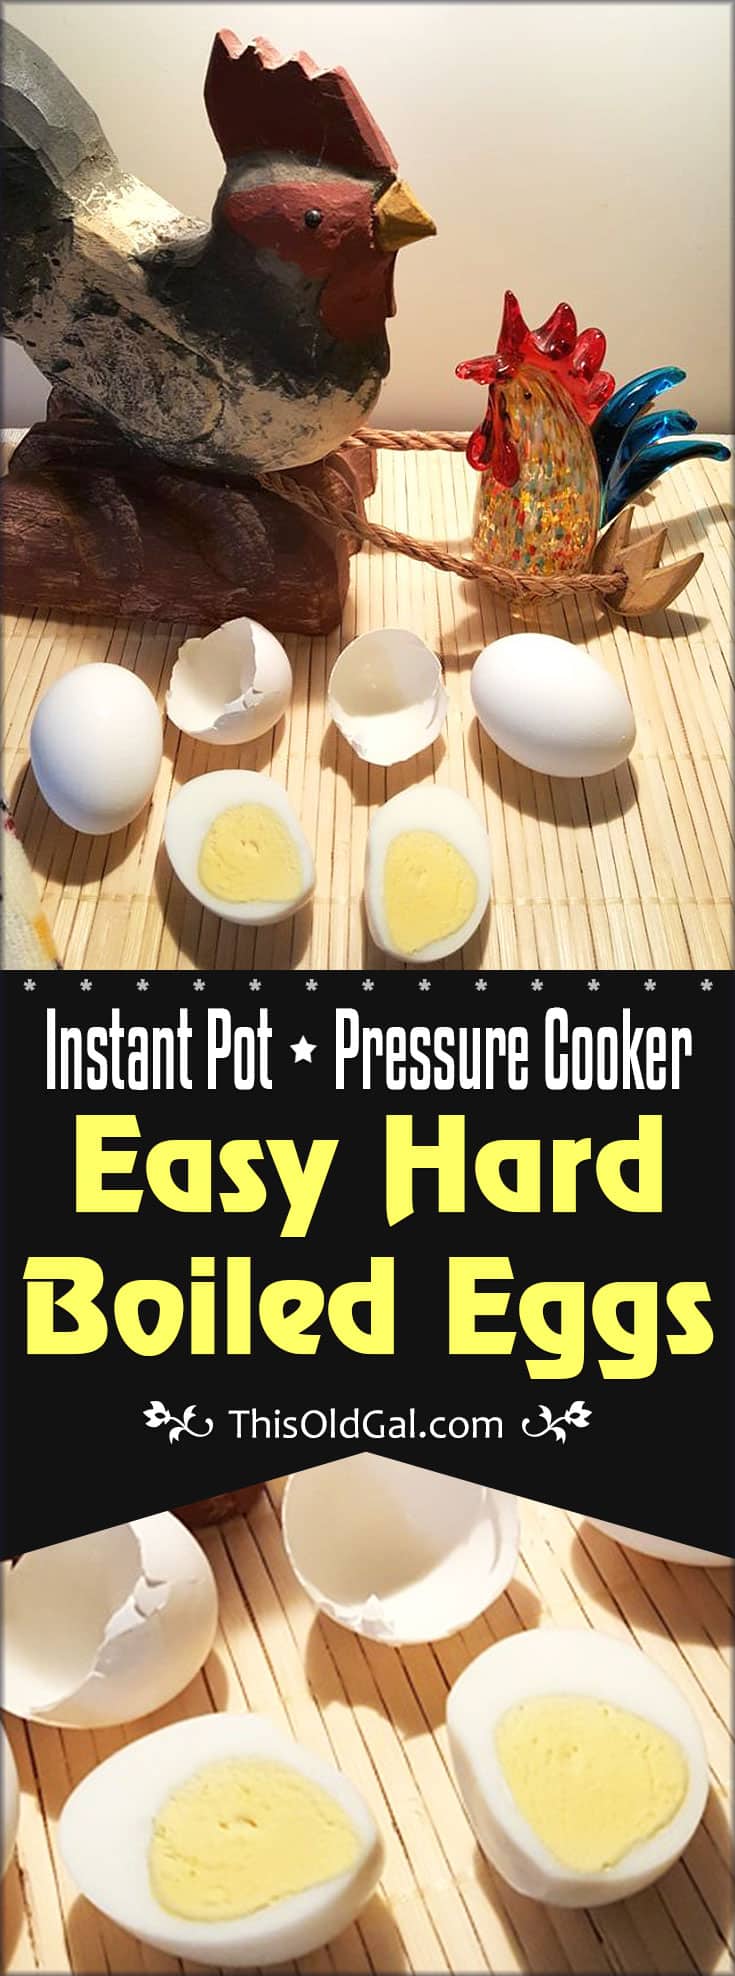 Pressure Cooker Easy Hard Boiled Eggs (Instant Pot)